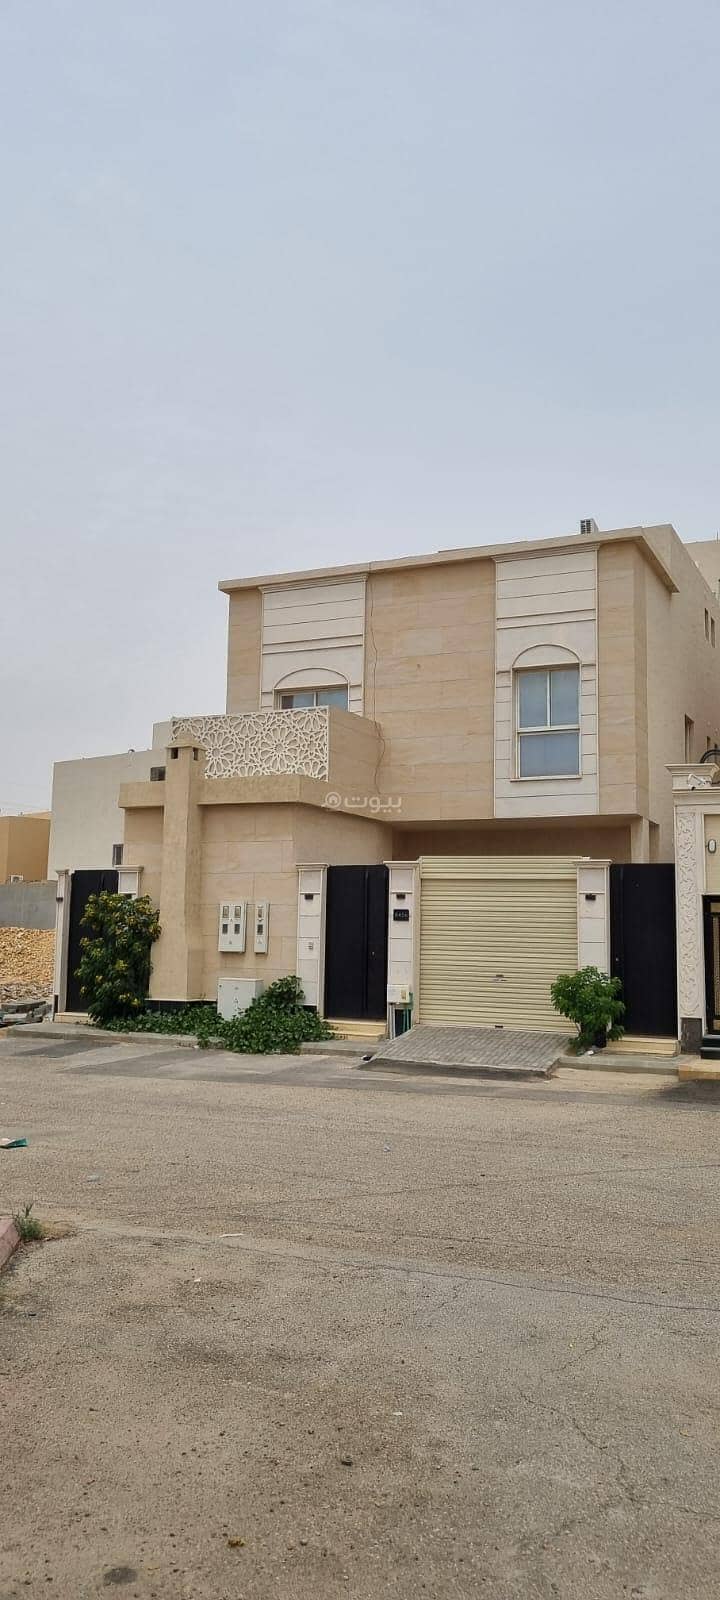 شقة للإيجار في حطين، الرياض